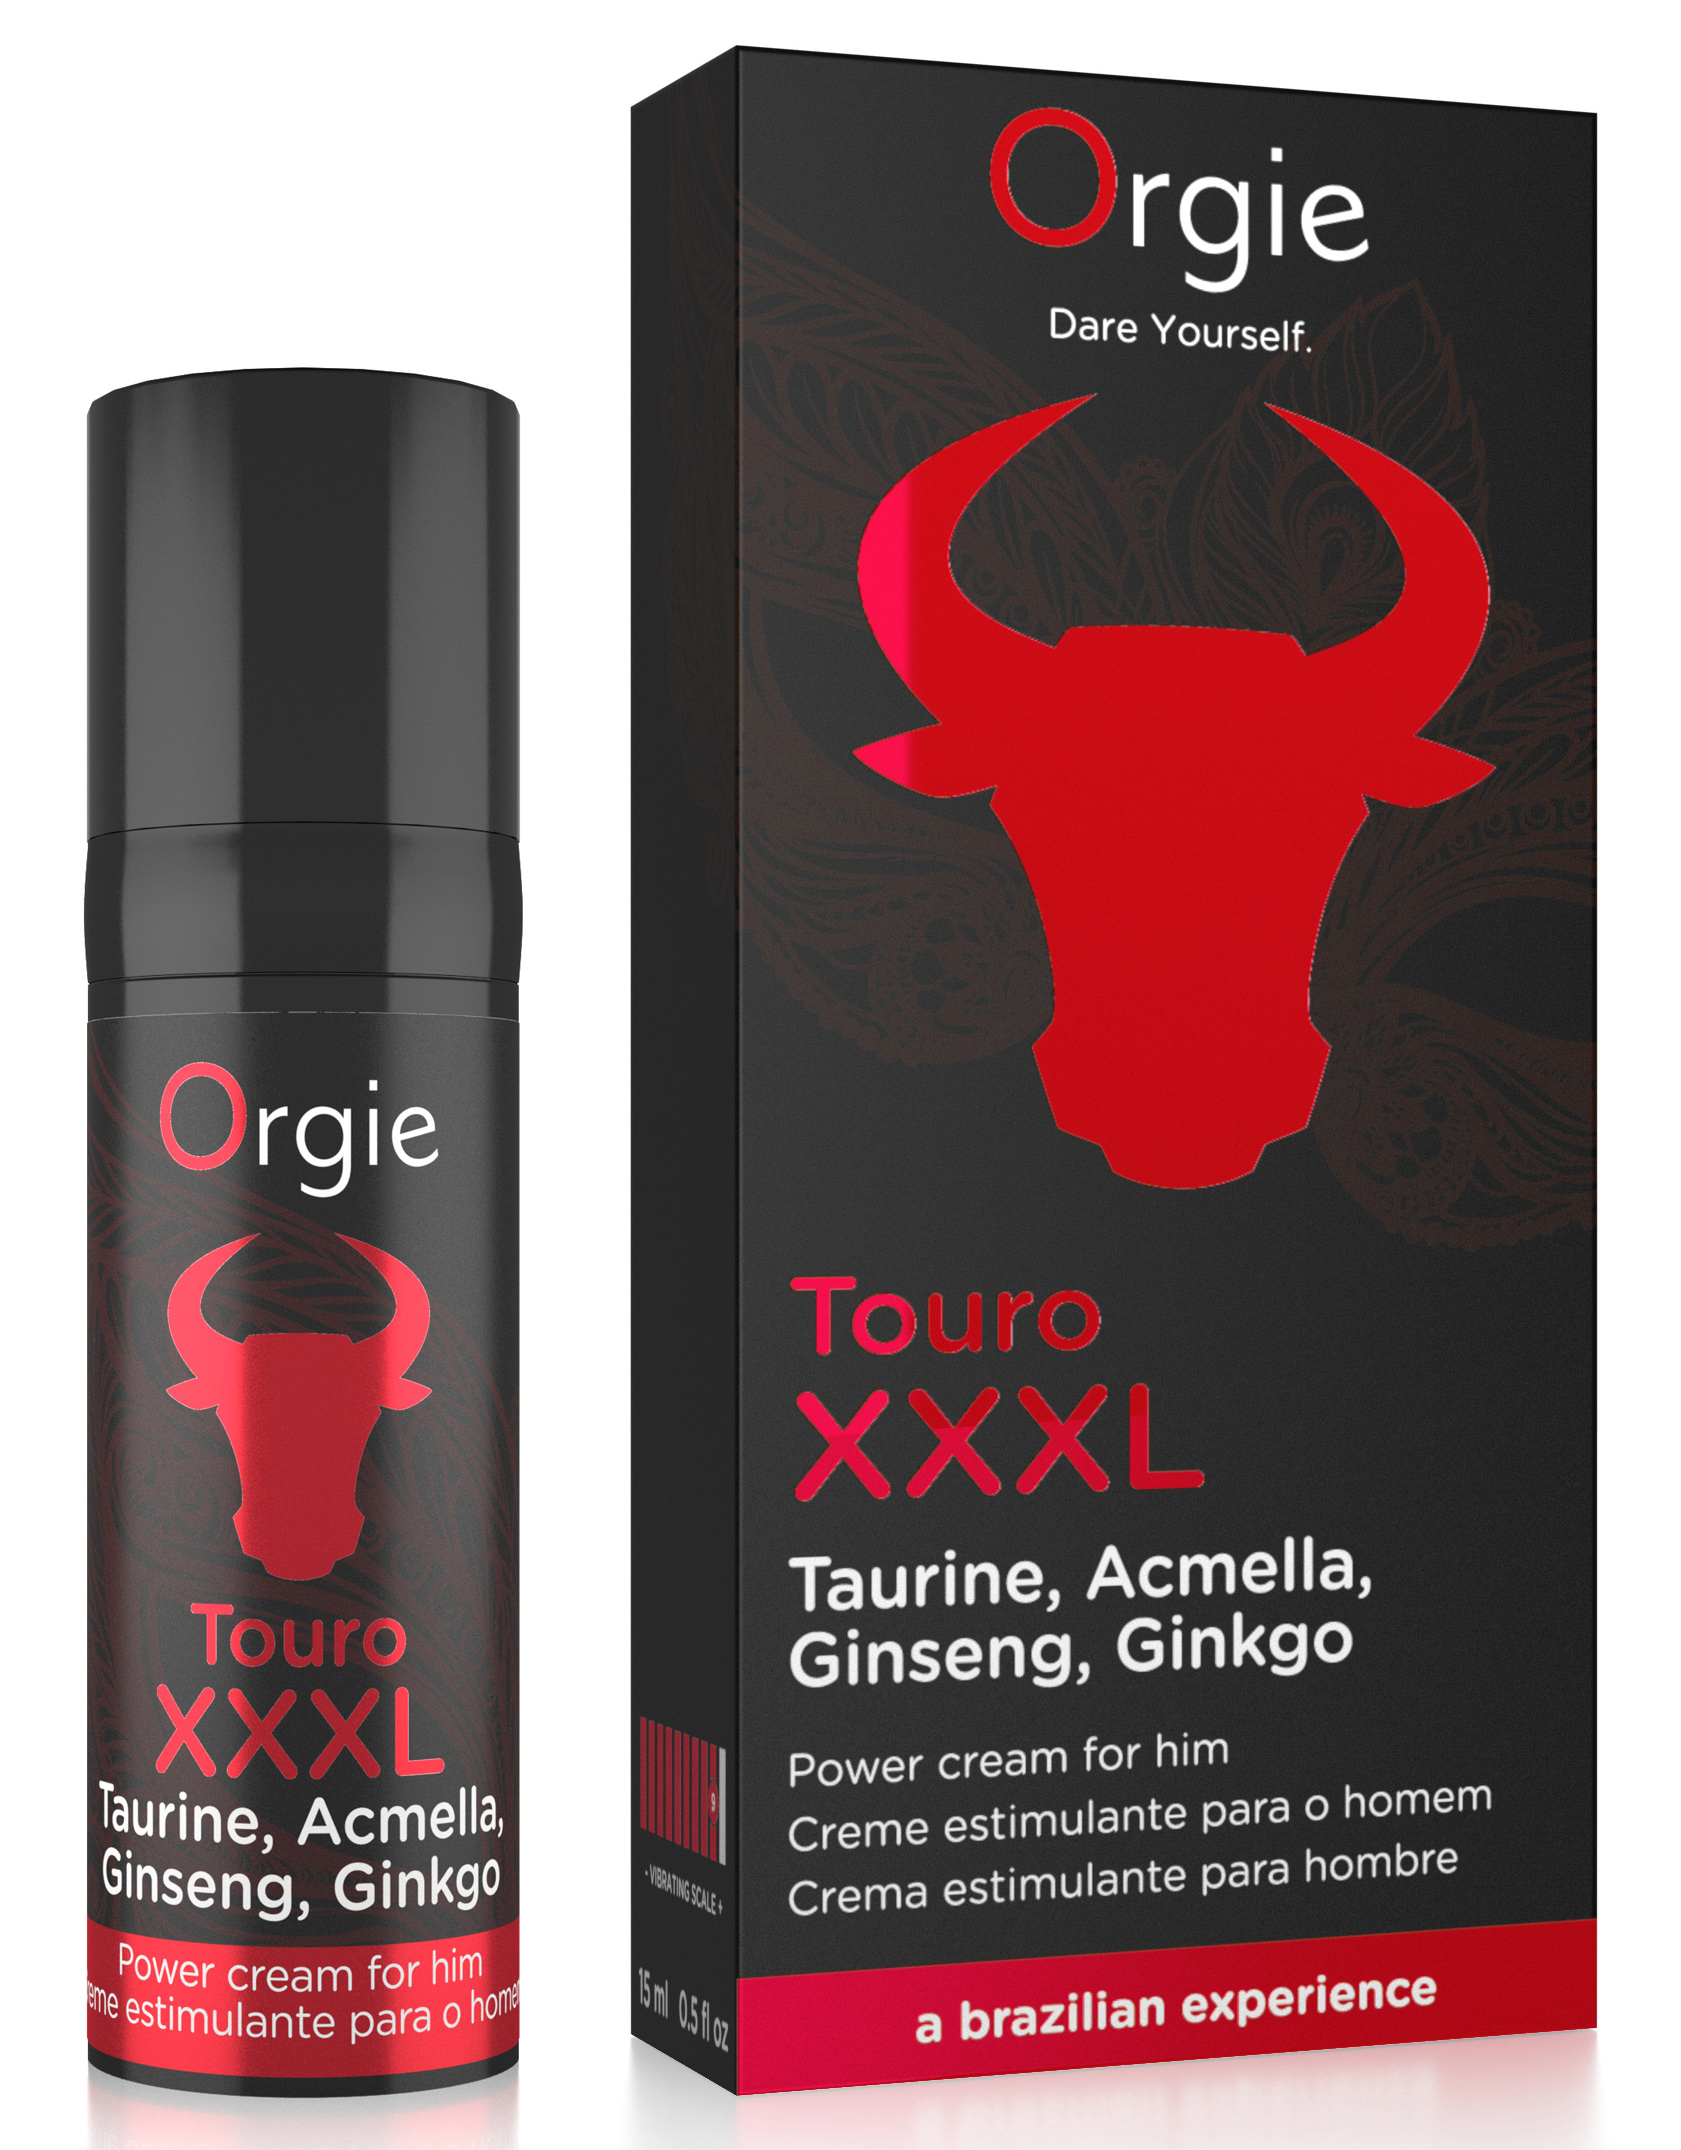 ORGIE Touro XXXL Power Cream